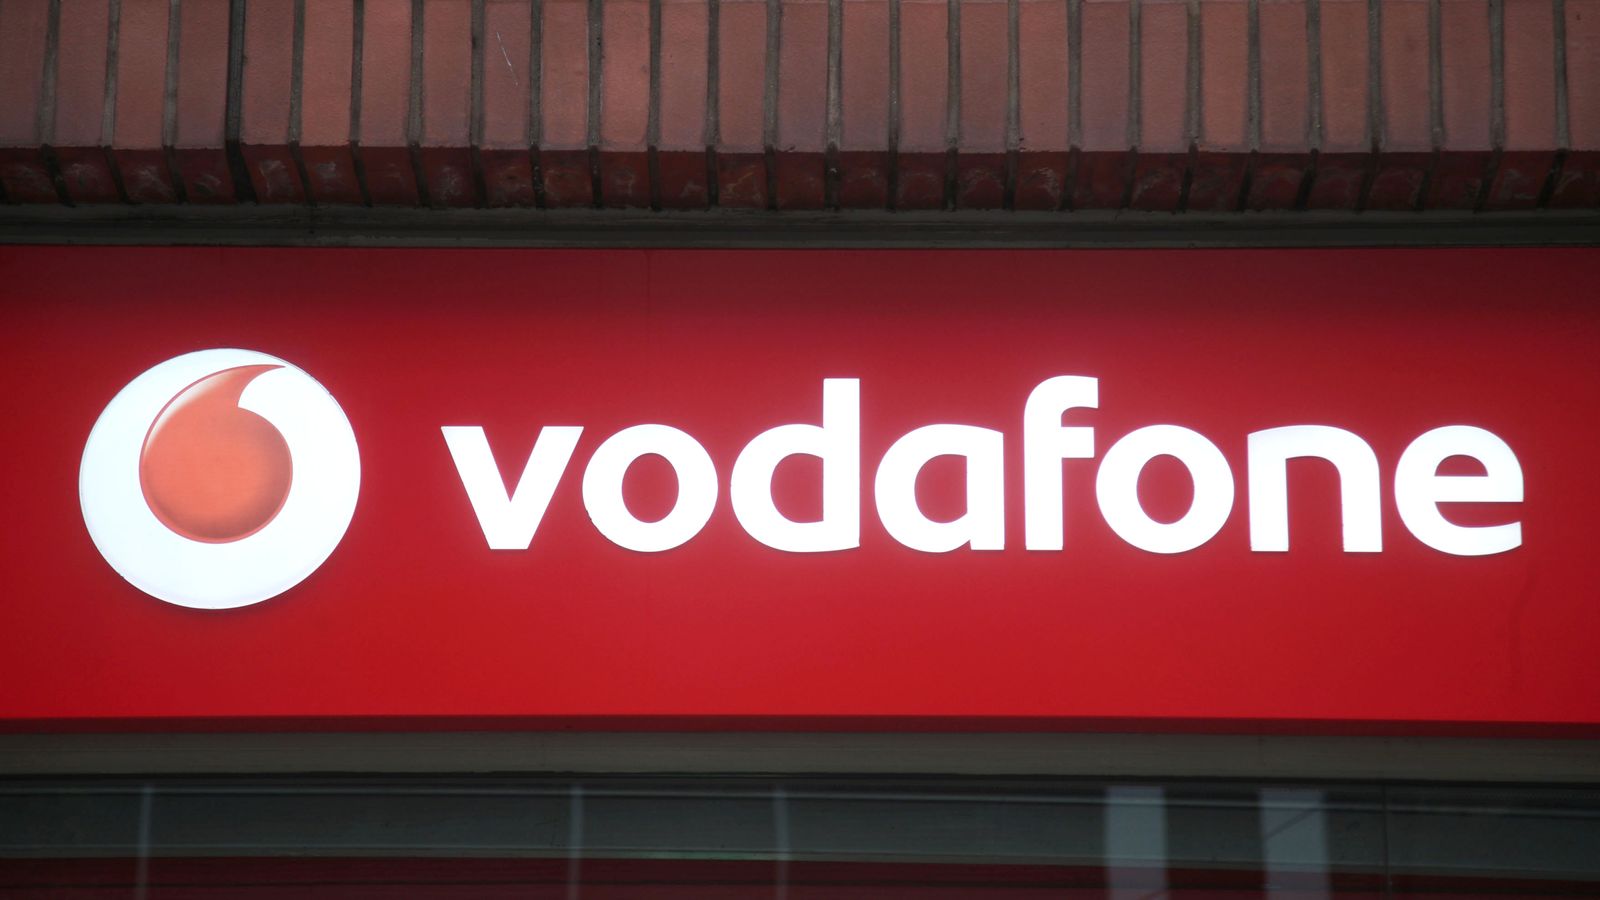 Vodafone: 14,6% собственост на фирмата от ОАЕ в телекомуникационния гигант представлява риск за националната сигурност и би повлияла на политиката на компанията, казва правителството на Обединеното кралство